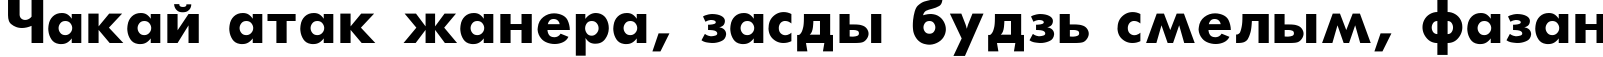 Пример написания шрифтом Futura-Bold текста на белорусском